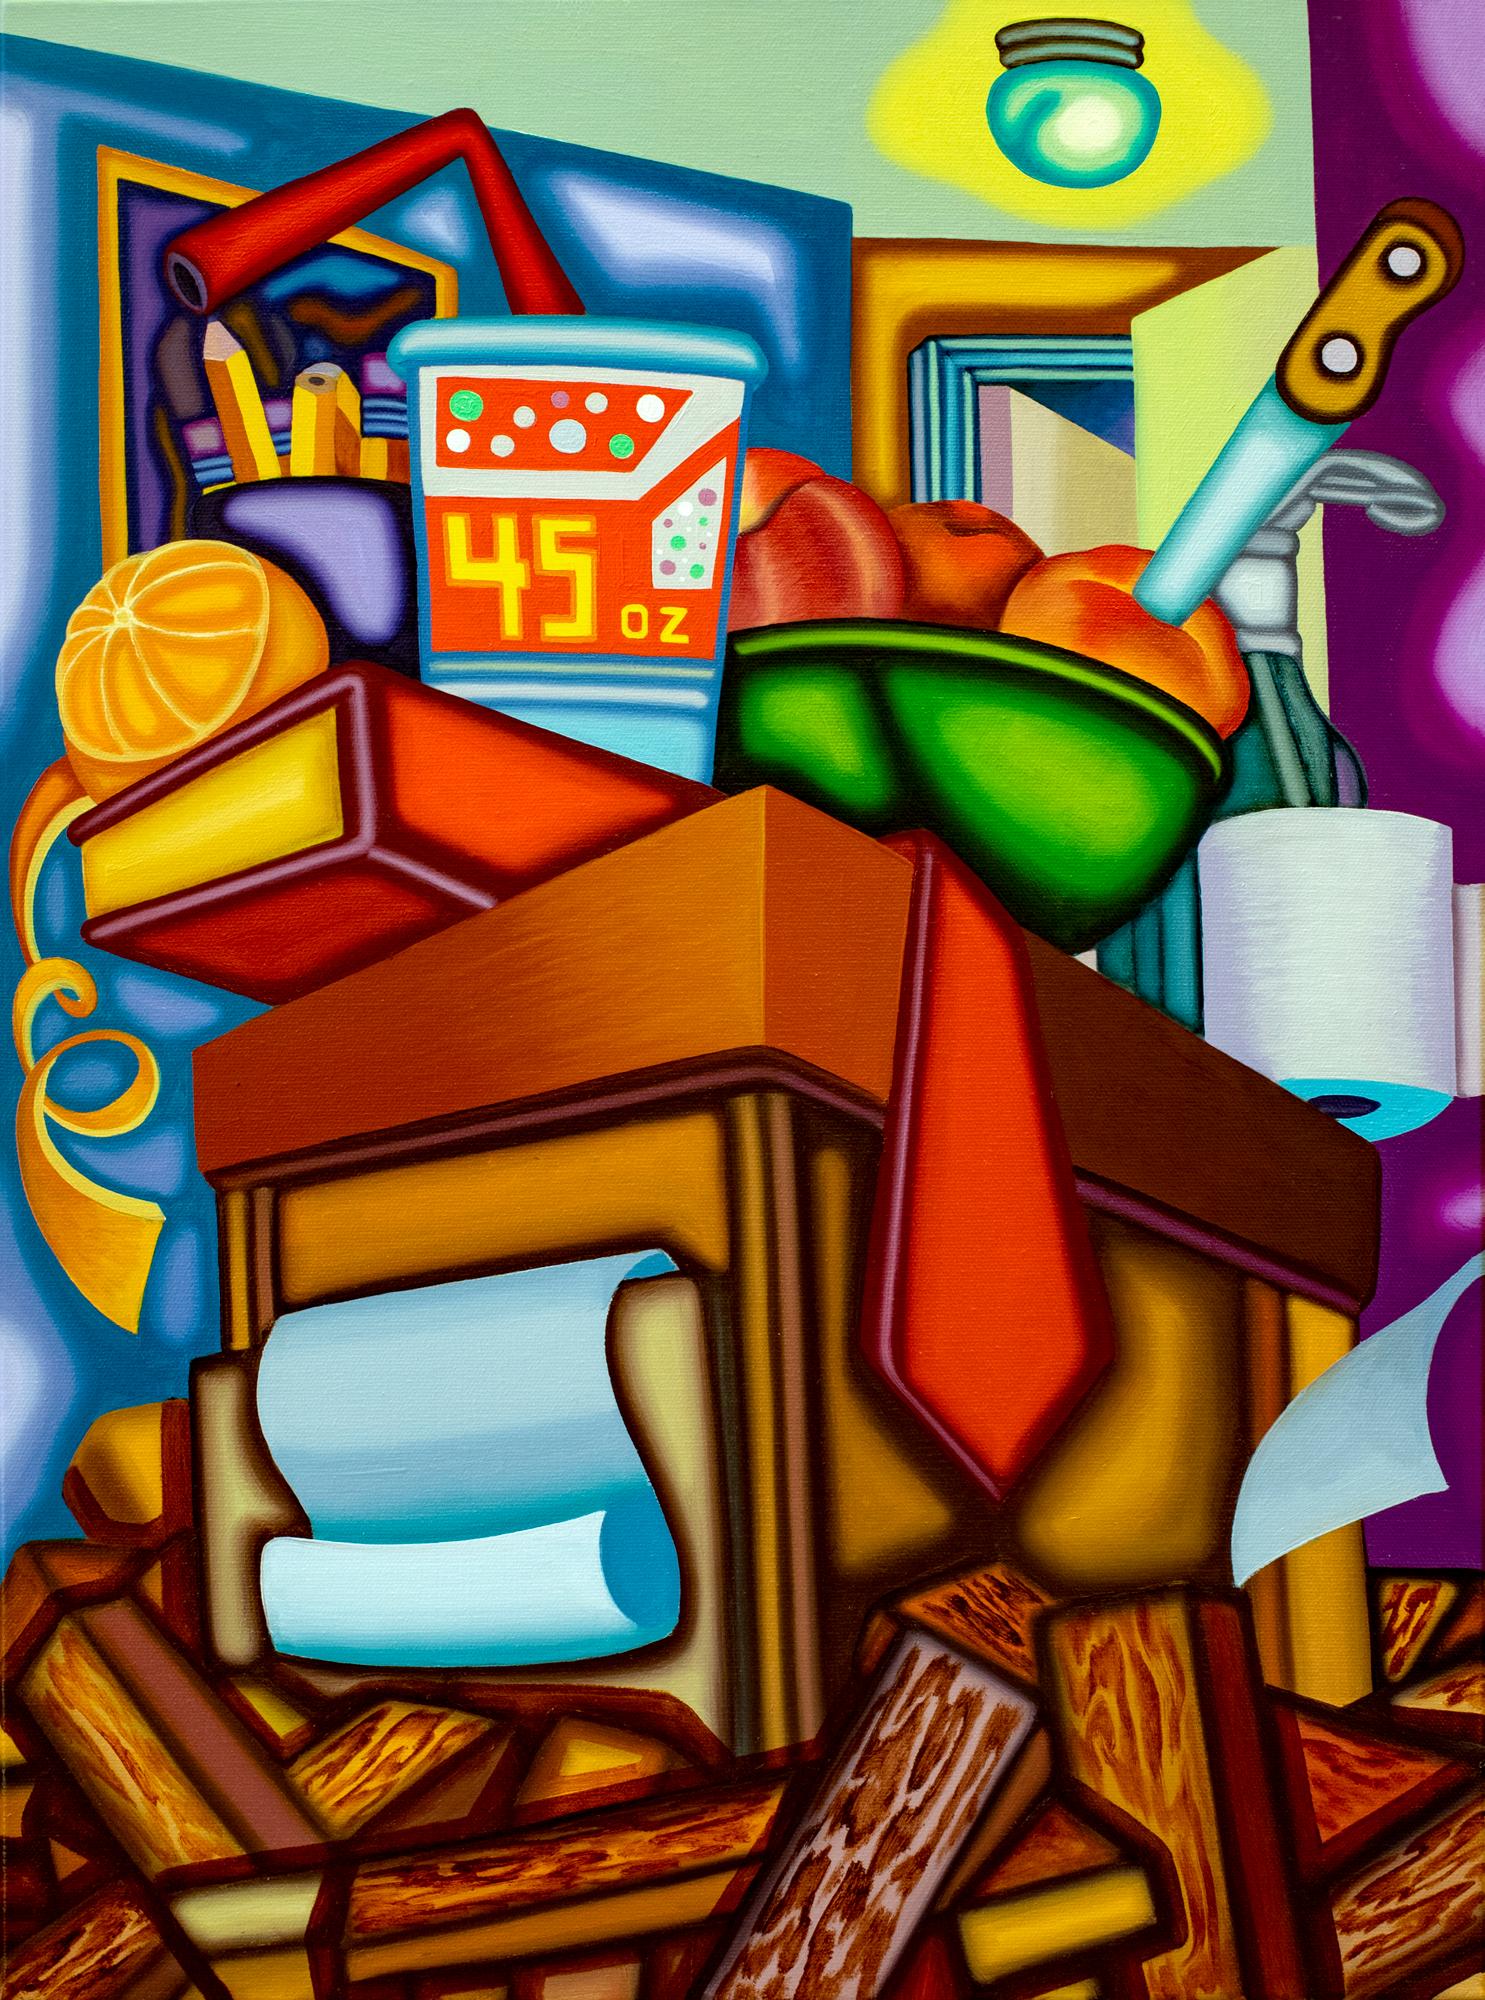 Jason Stout Interior Painting – AS AB ABOVE SO BELOW - Kubistisches, surreales Stillleben mit kräftigen Farben